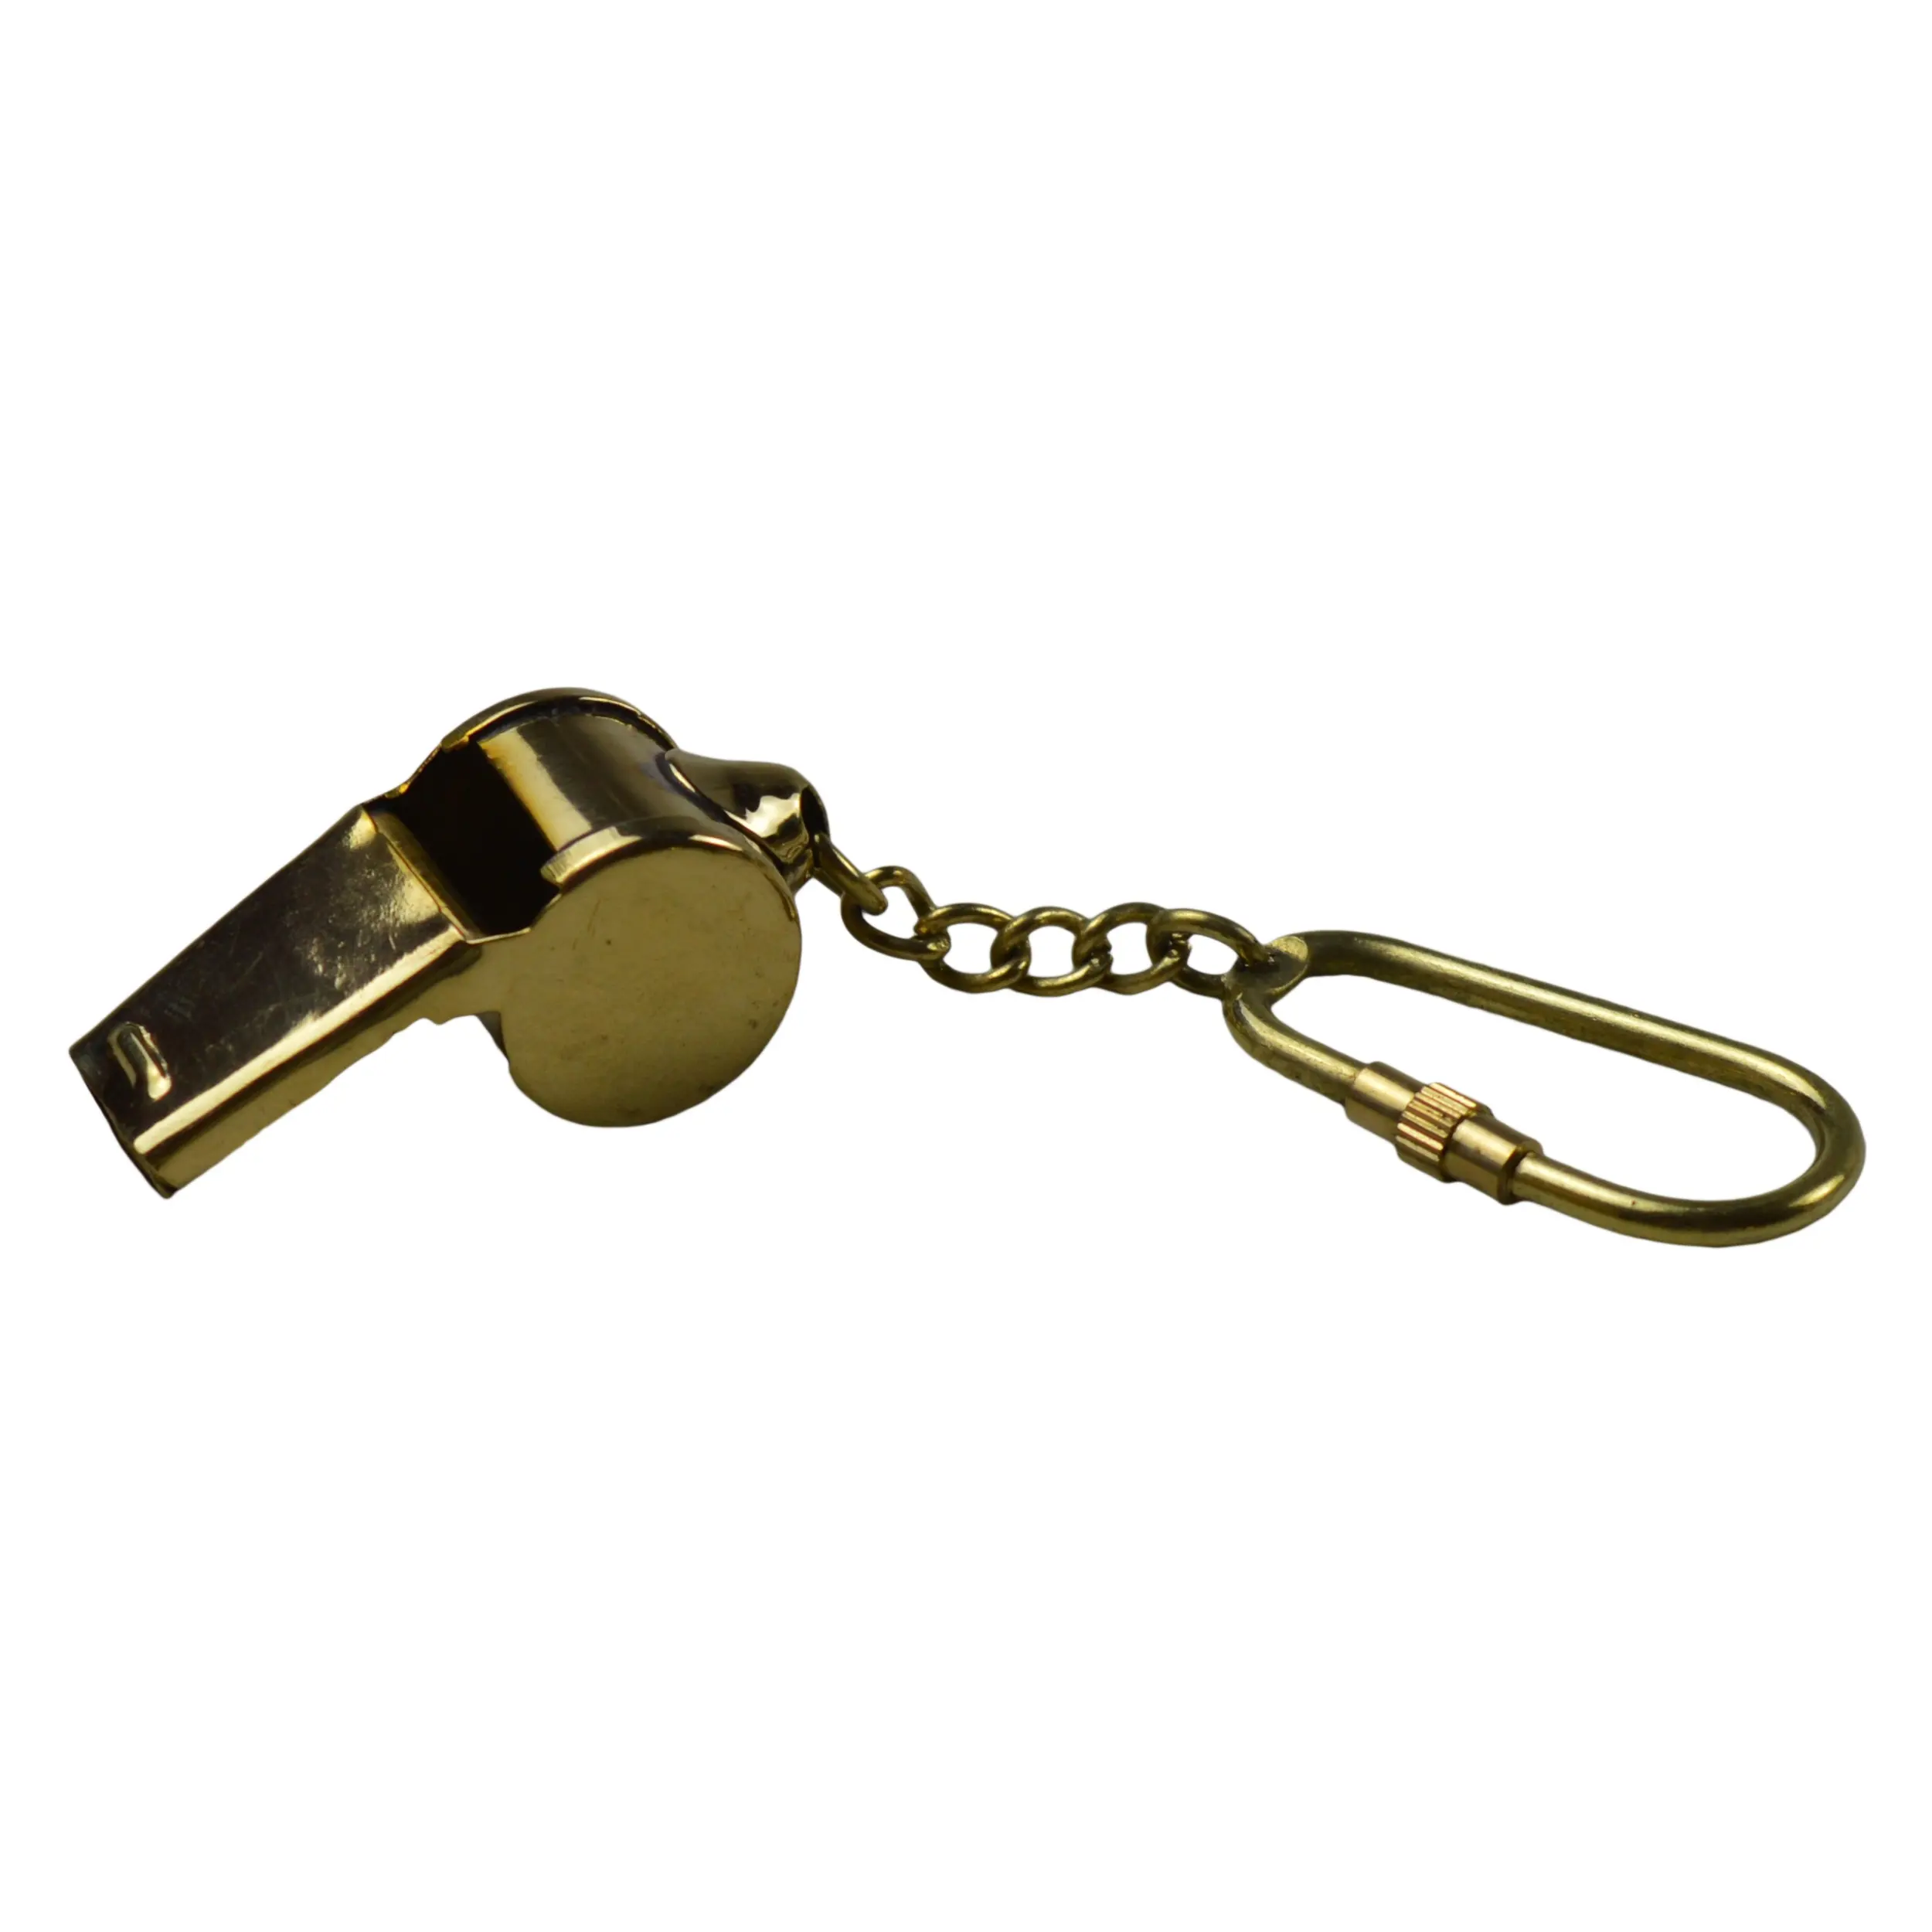 장식 골드 컬러 마무리 디자인 키 홀더 장식 황동 금속 디자인 열쇠 고리 최고의 휘슬 모양의 열쇠 고리